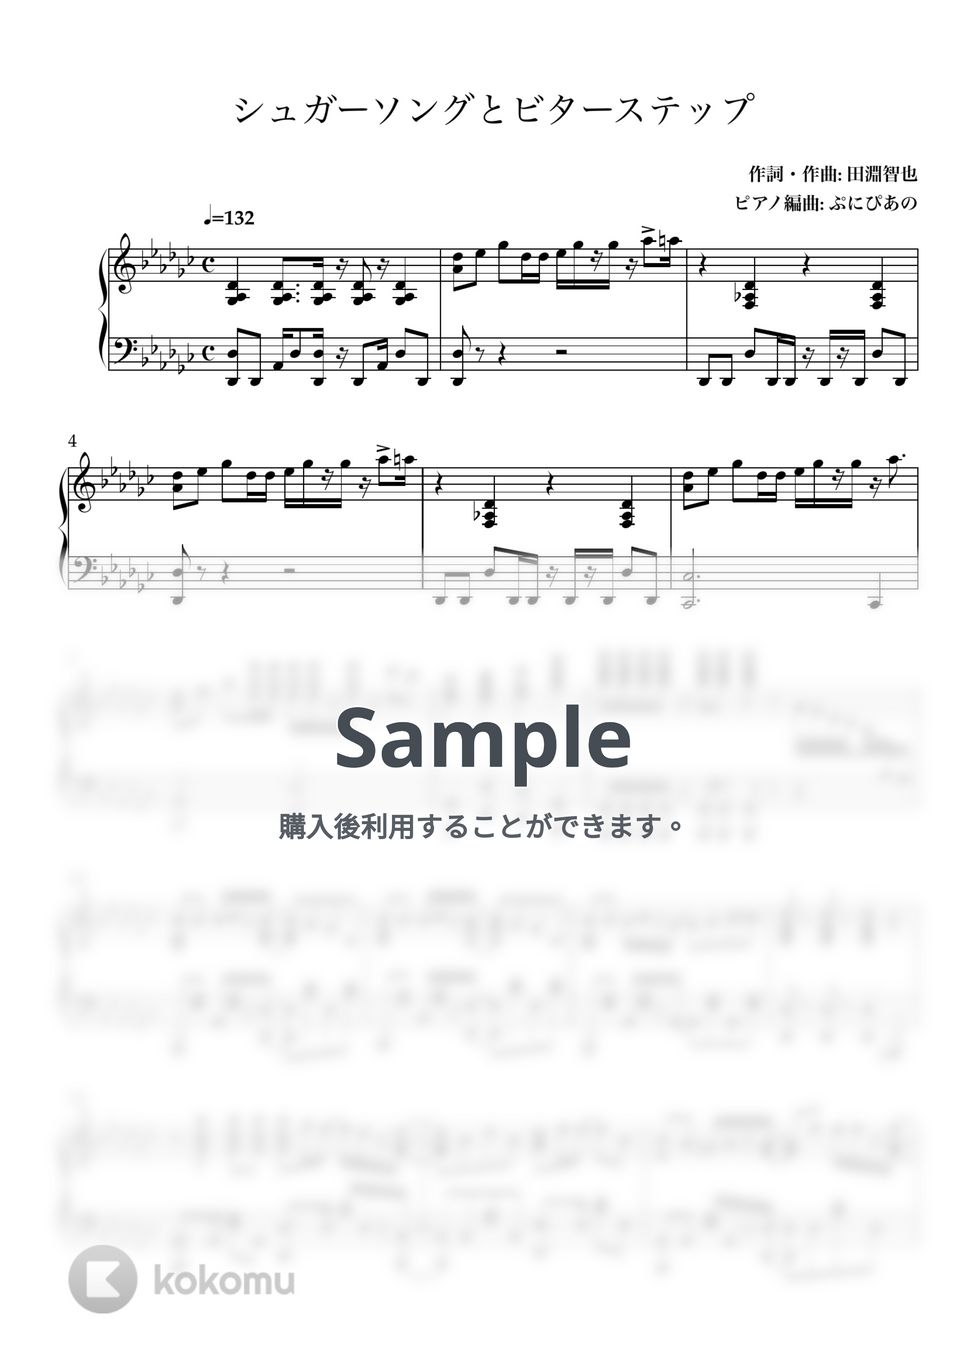 UNISON SQUARE GARDEN - シュガーソングとビターステップ by ぷにぴあの